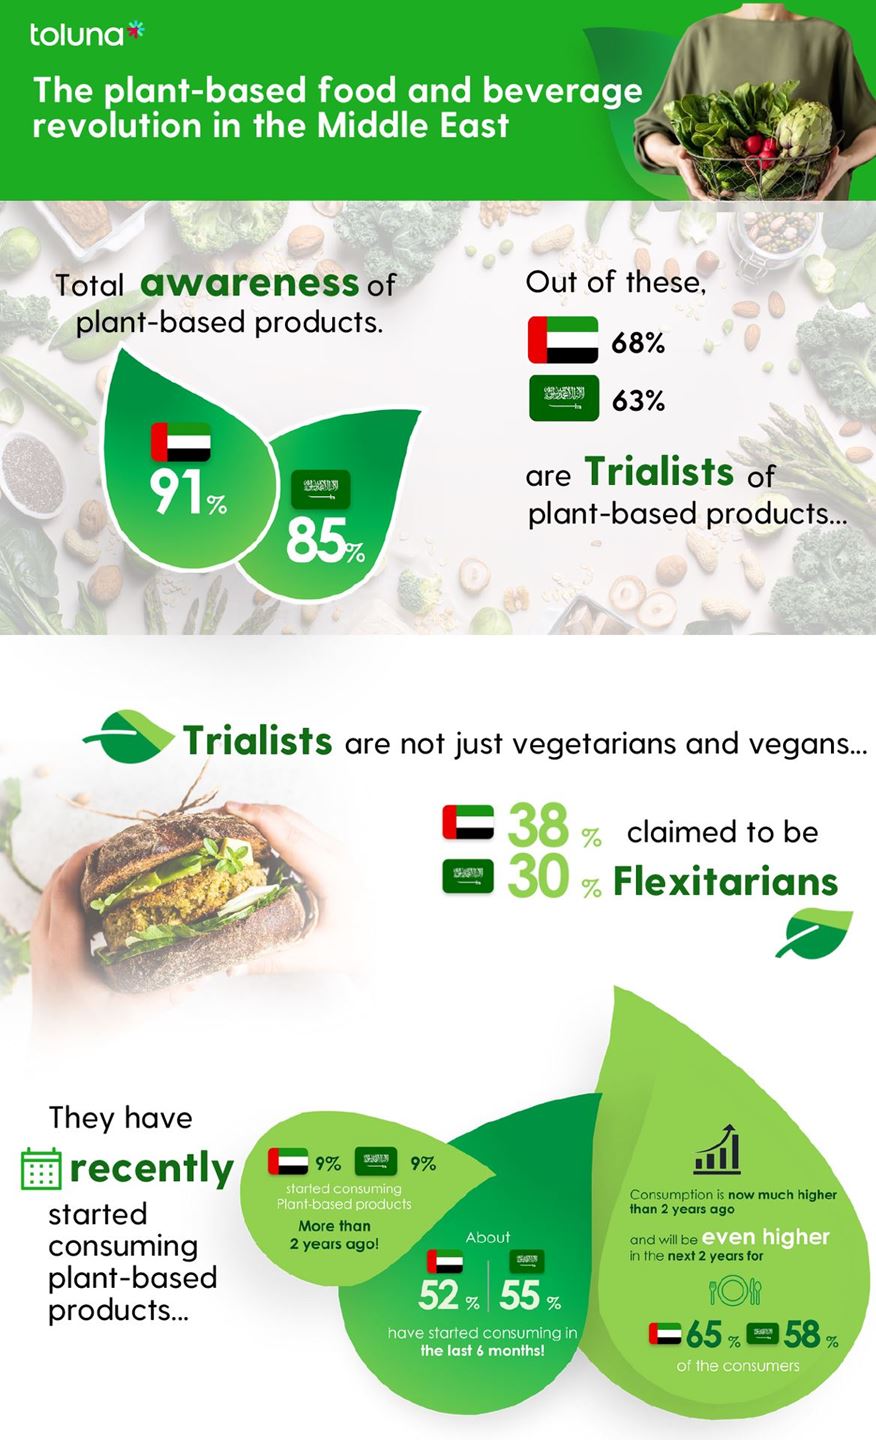 المستهلكون في الشرق الأوسط يتجهون الى الأغذية والمشروبات النباتية .. 50% يتوقعون زيادة في استهلاك الغذاء النباتي